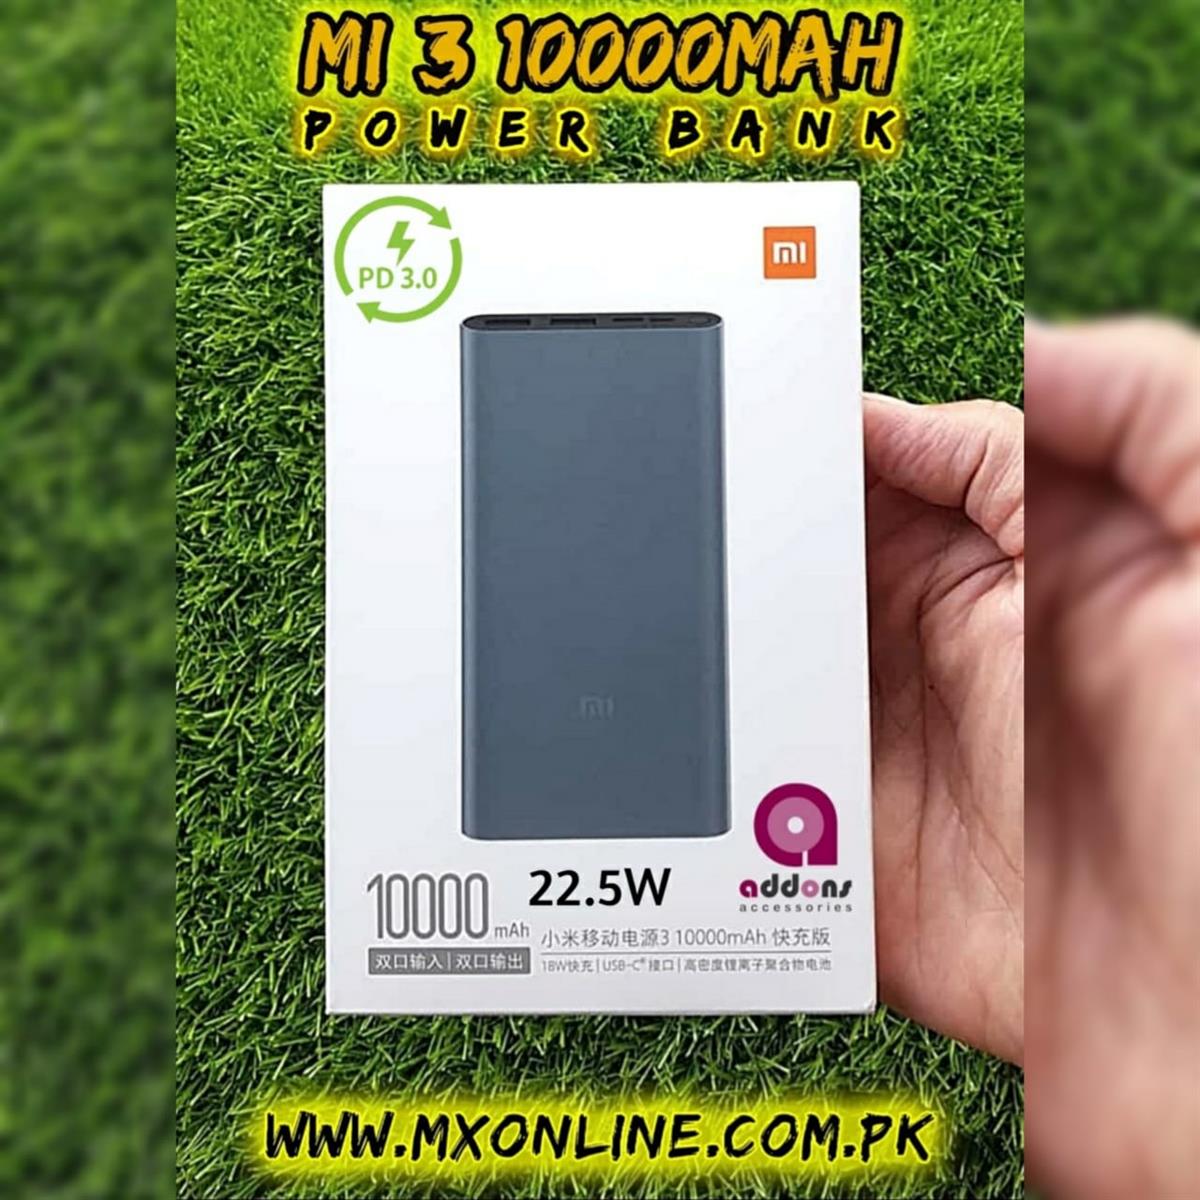 Xiaomi Powerbank 3 10000mAh 22.5W